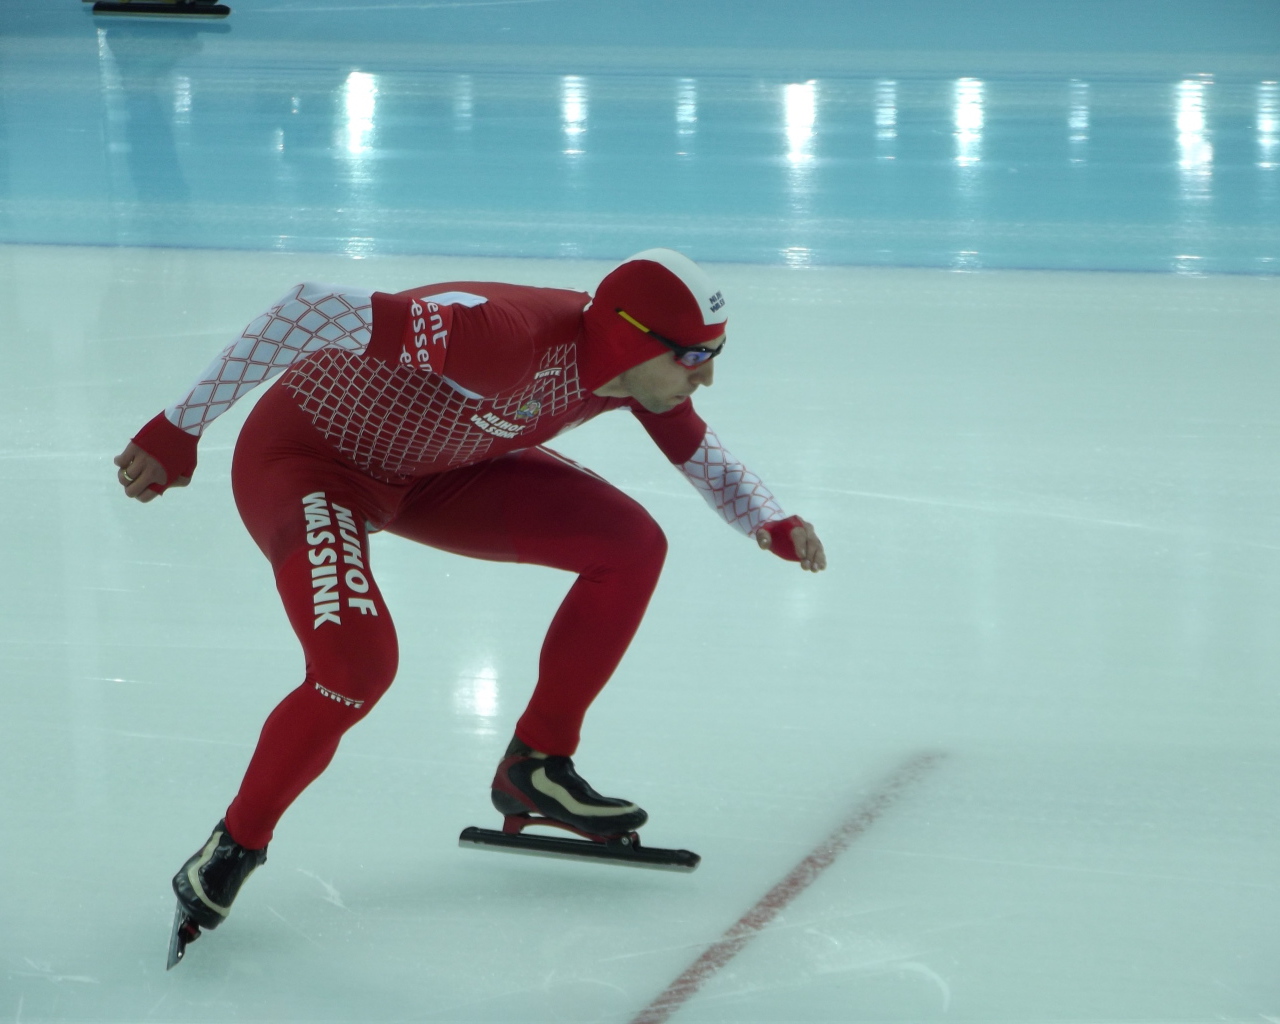 Збигнев Брудка польский конькобежец  обладатель золотой медали в Сочи